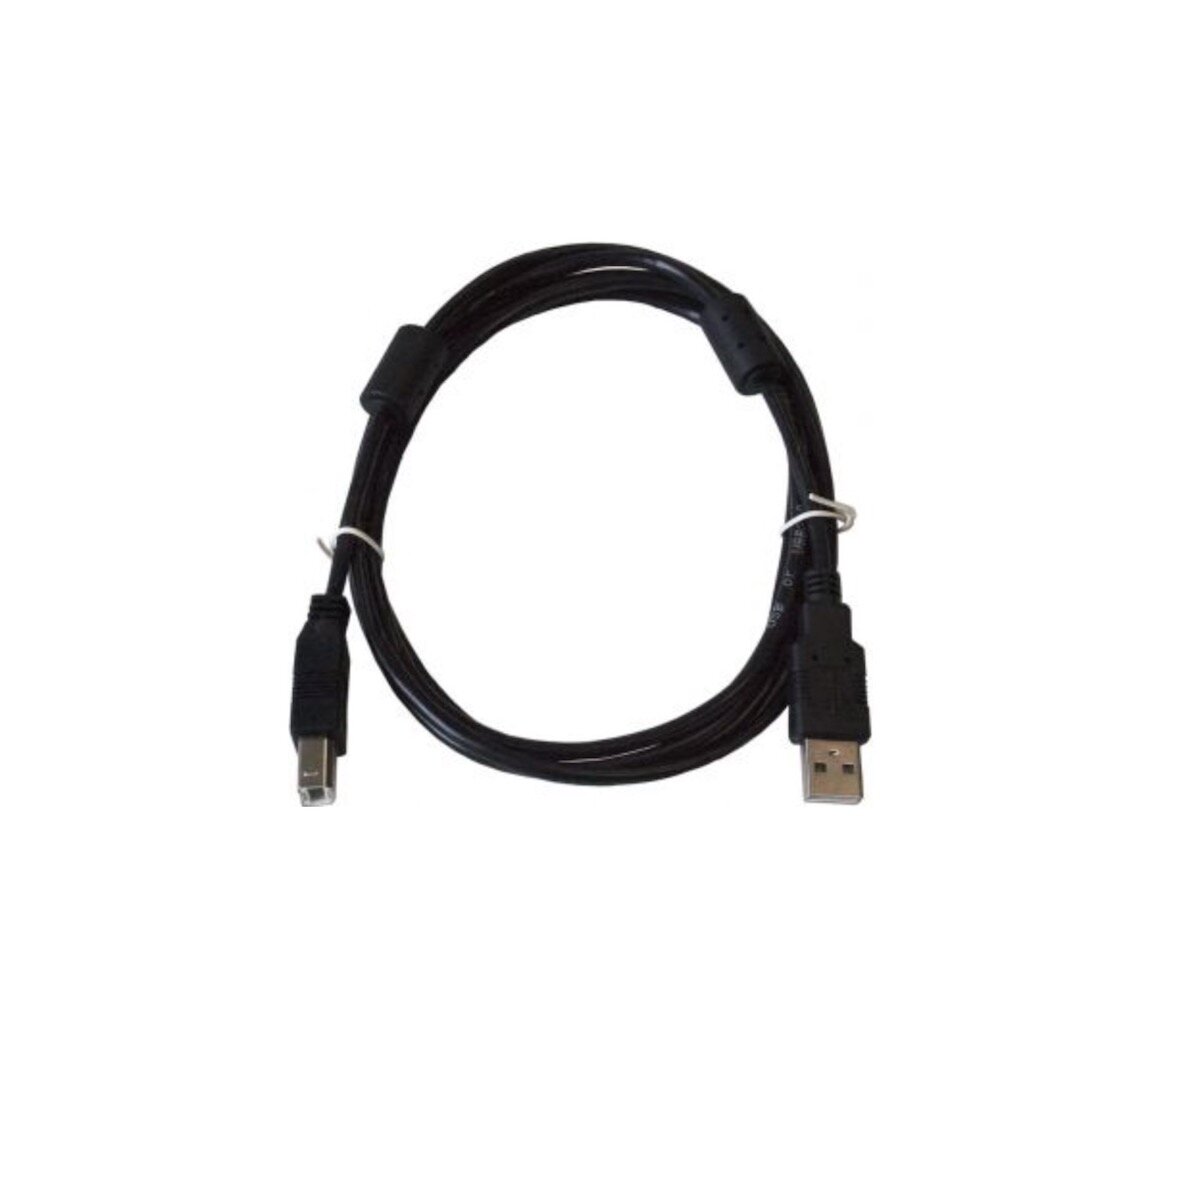 Kabel USB ART USB-A - micro-B 1.8 m widoczny z góry